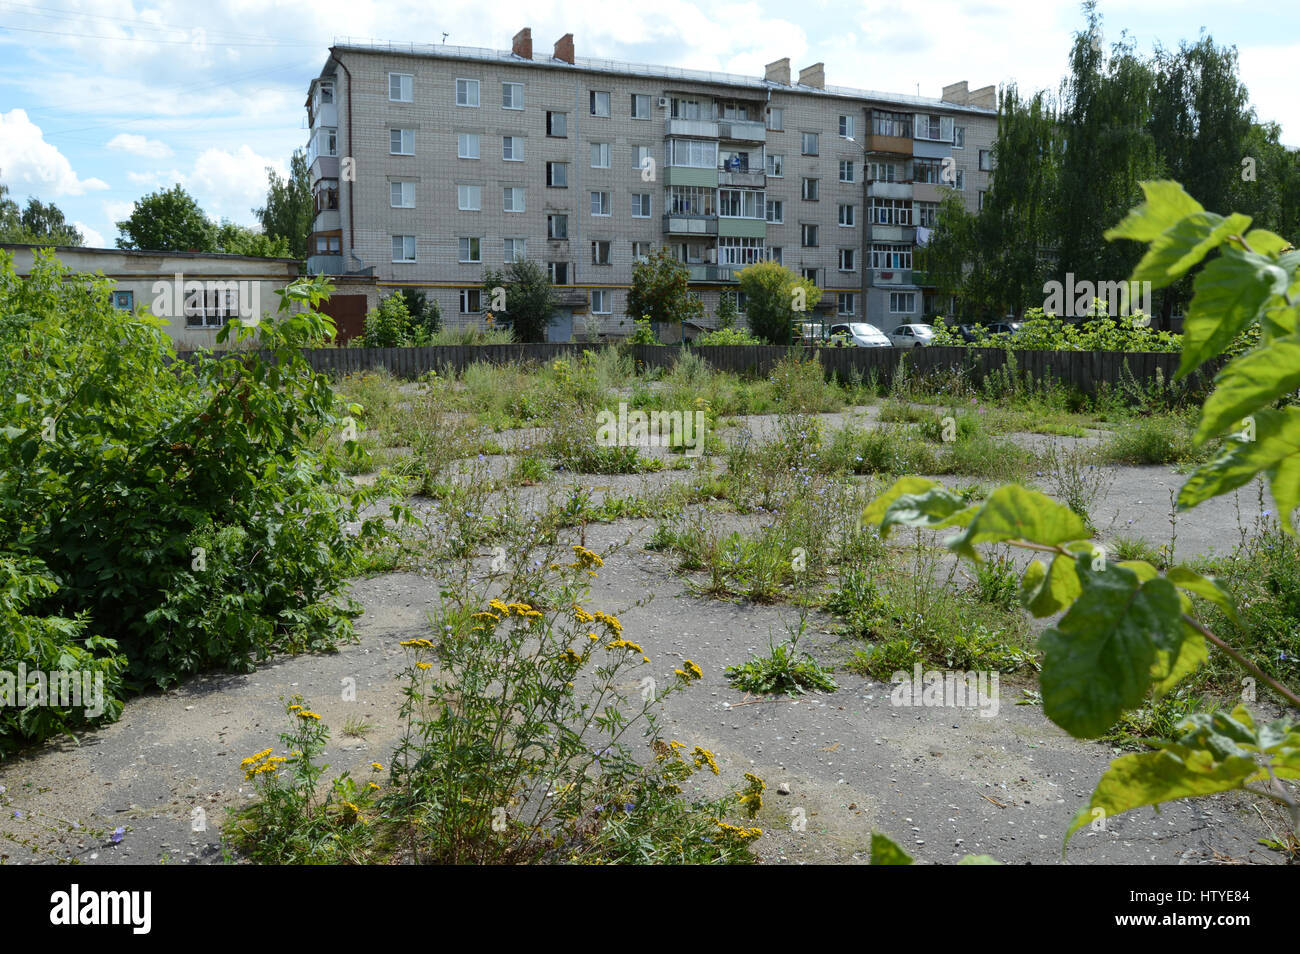 KOVROV, Russie - le 30 juillet 2015 : envahis par les herbes et les buissons aire de hockey dans la cour d'un immeuble de plusieurs étages Banque D'Images